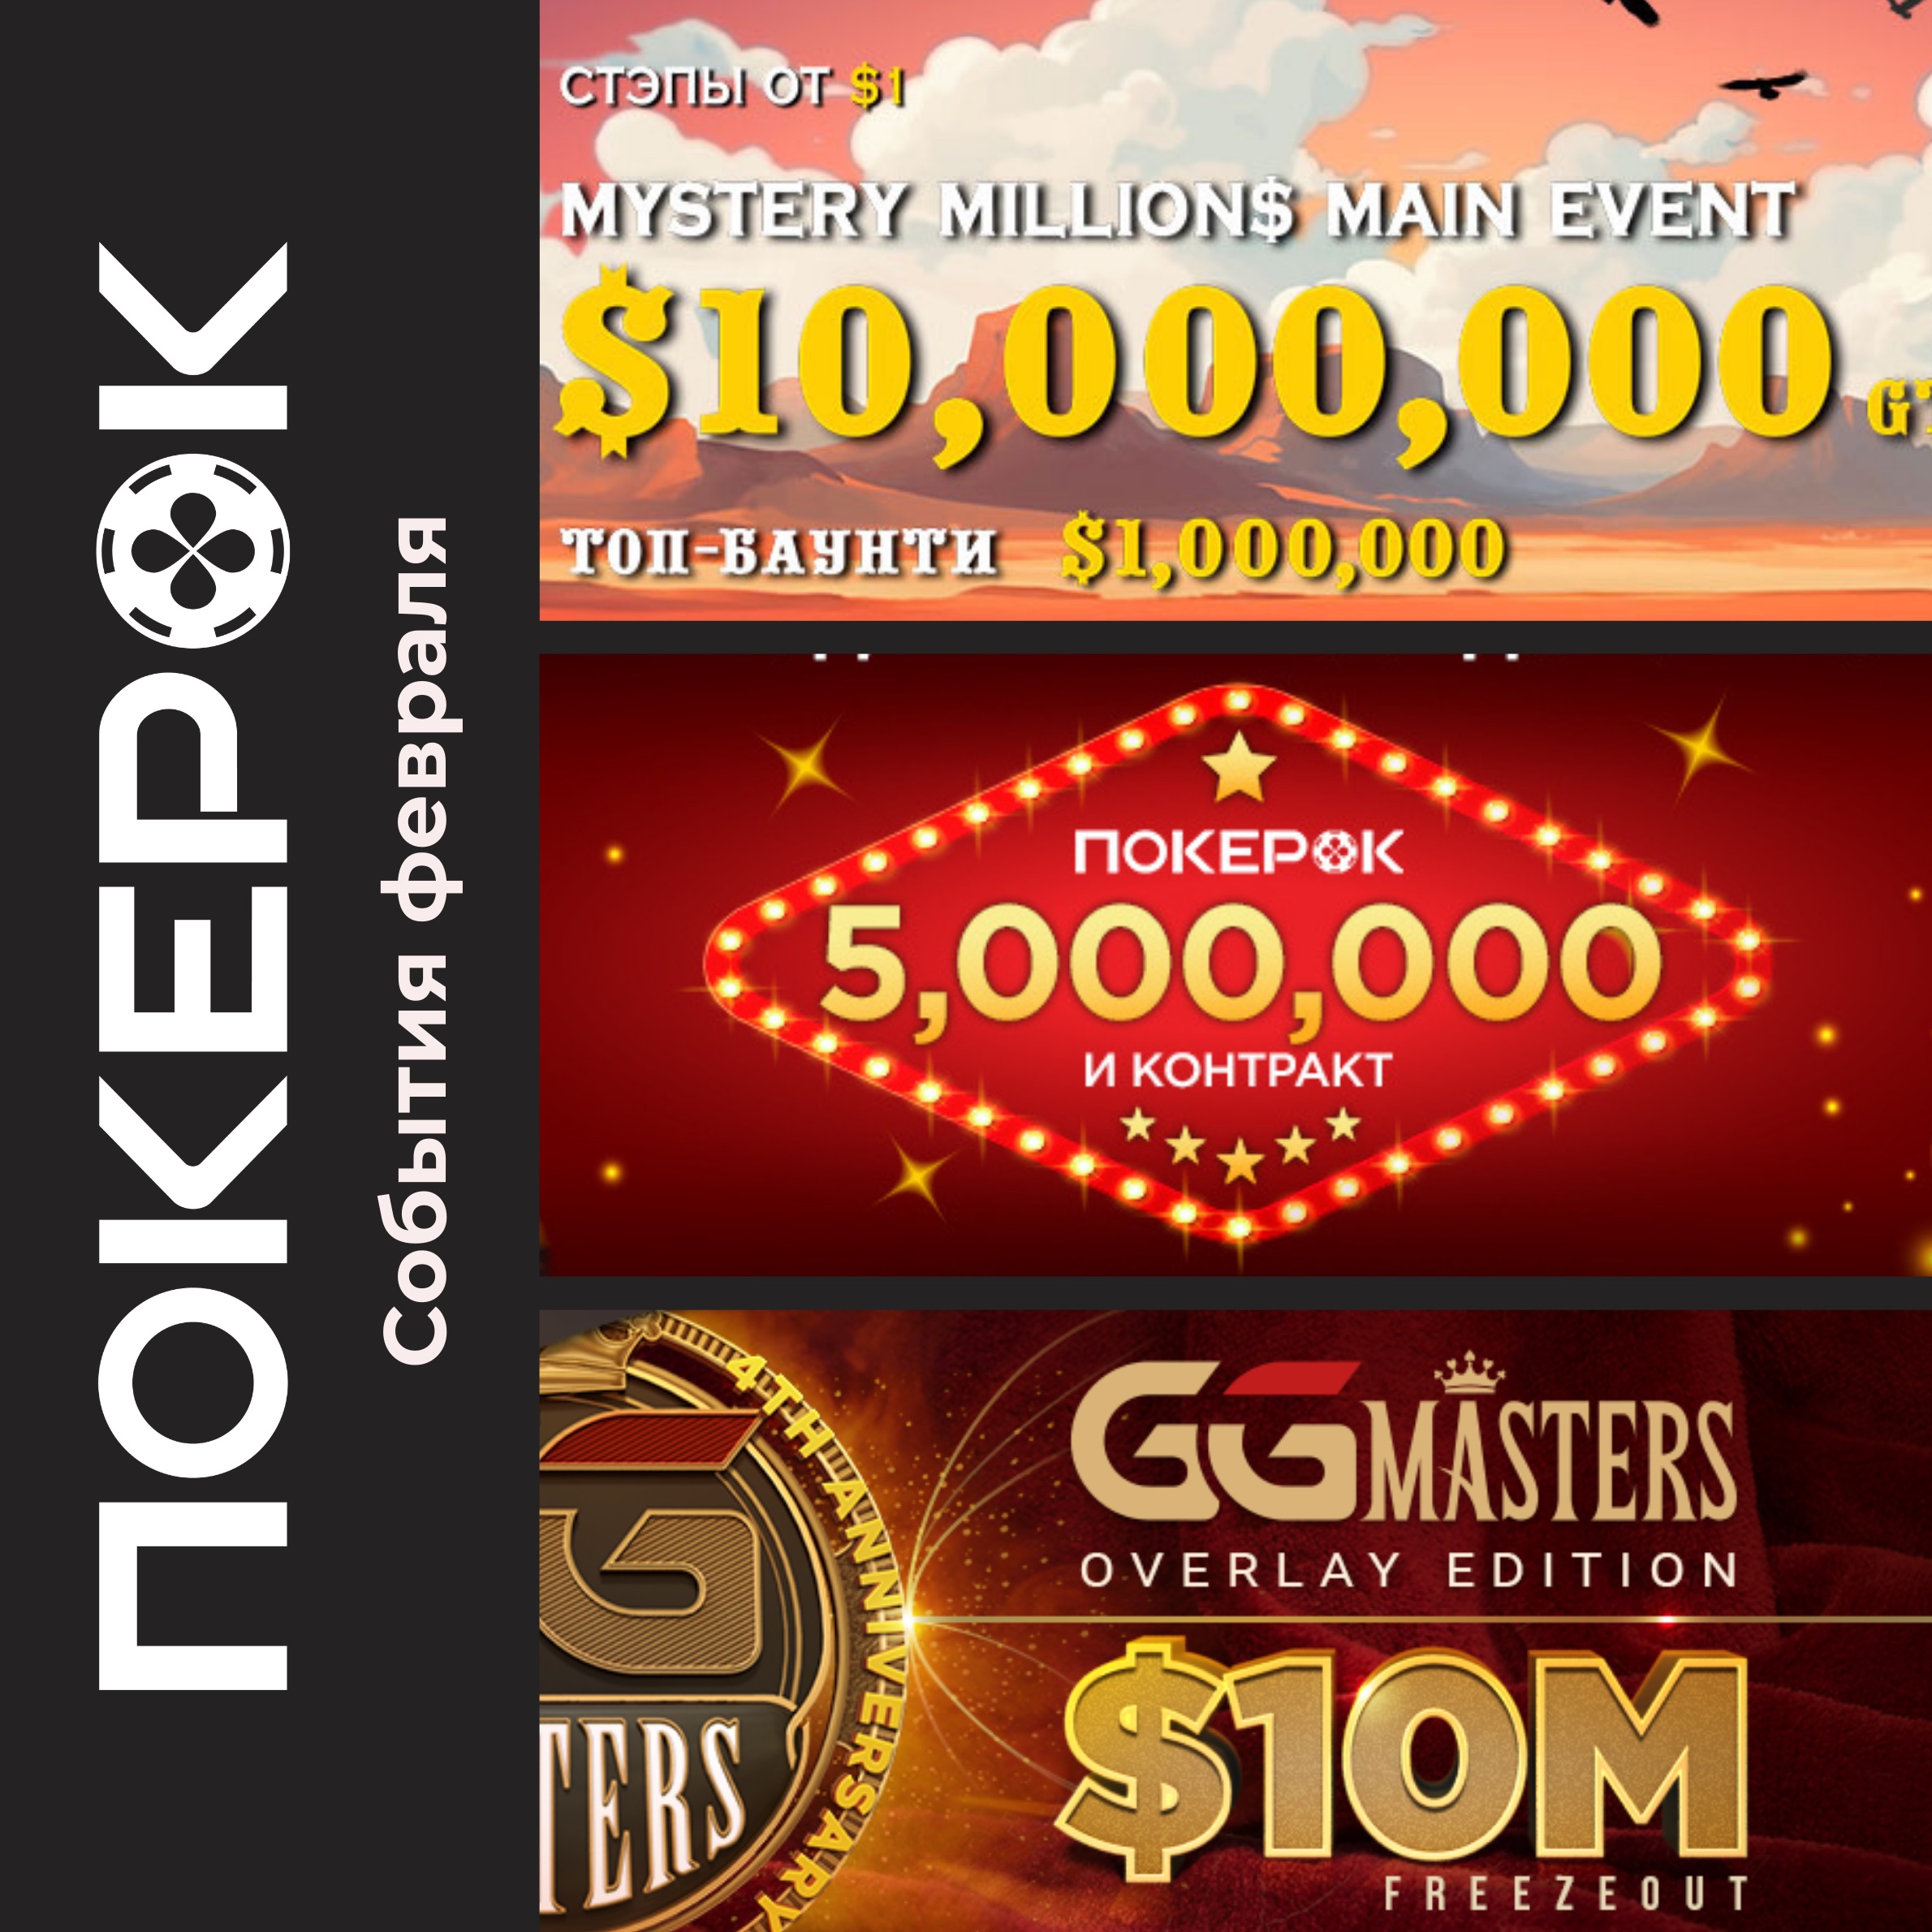 Финал серии Bounty Hunters, продление конкурса Народный амбассадор и анонс третьего GGMasters Overlay Edition – как началась эта неделя на ПокерОК?